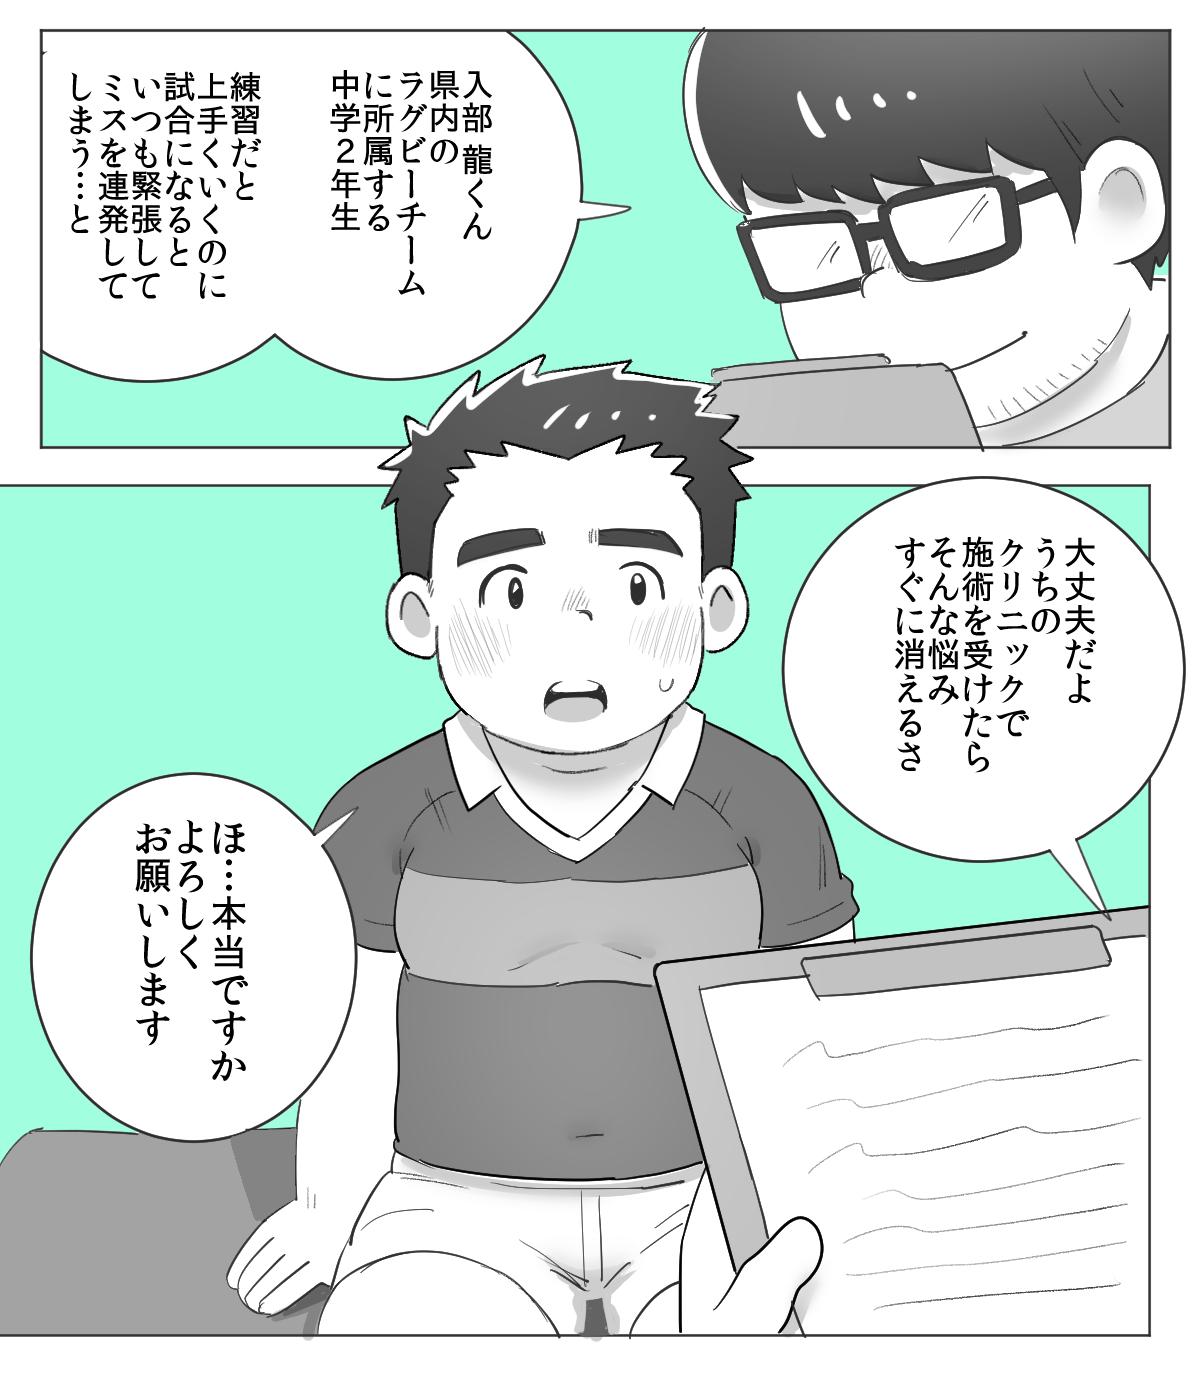 Daring obeccho - 短編漫画「施術にようこそ！1」 - Original Solo - Page 3